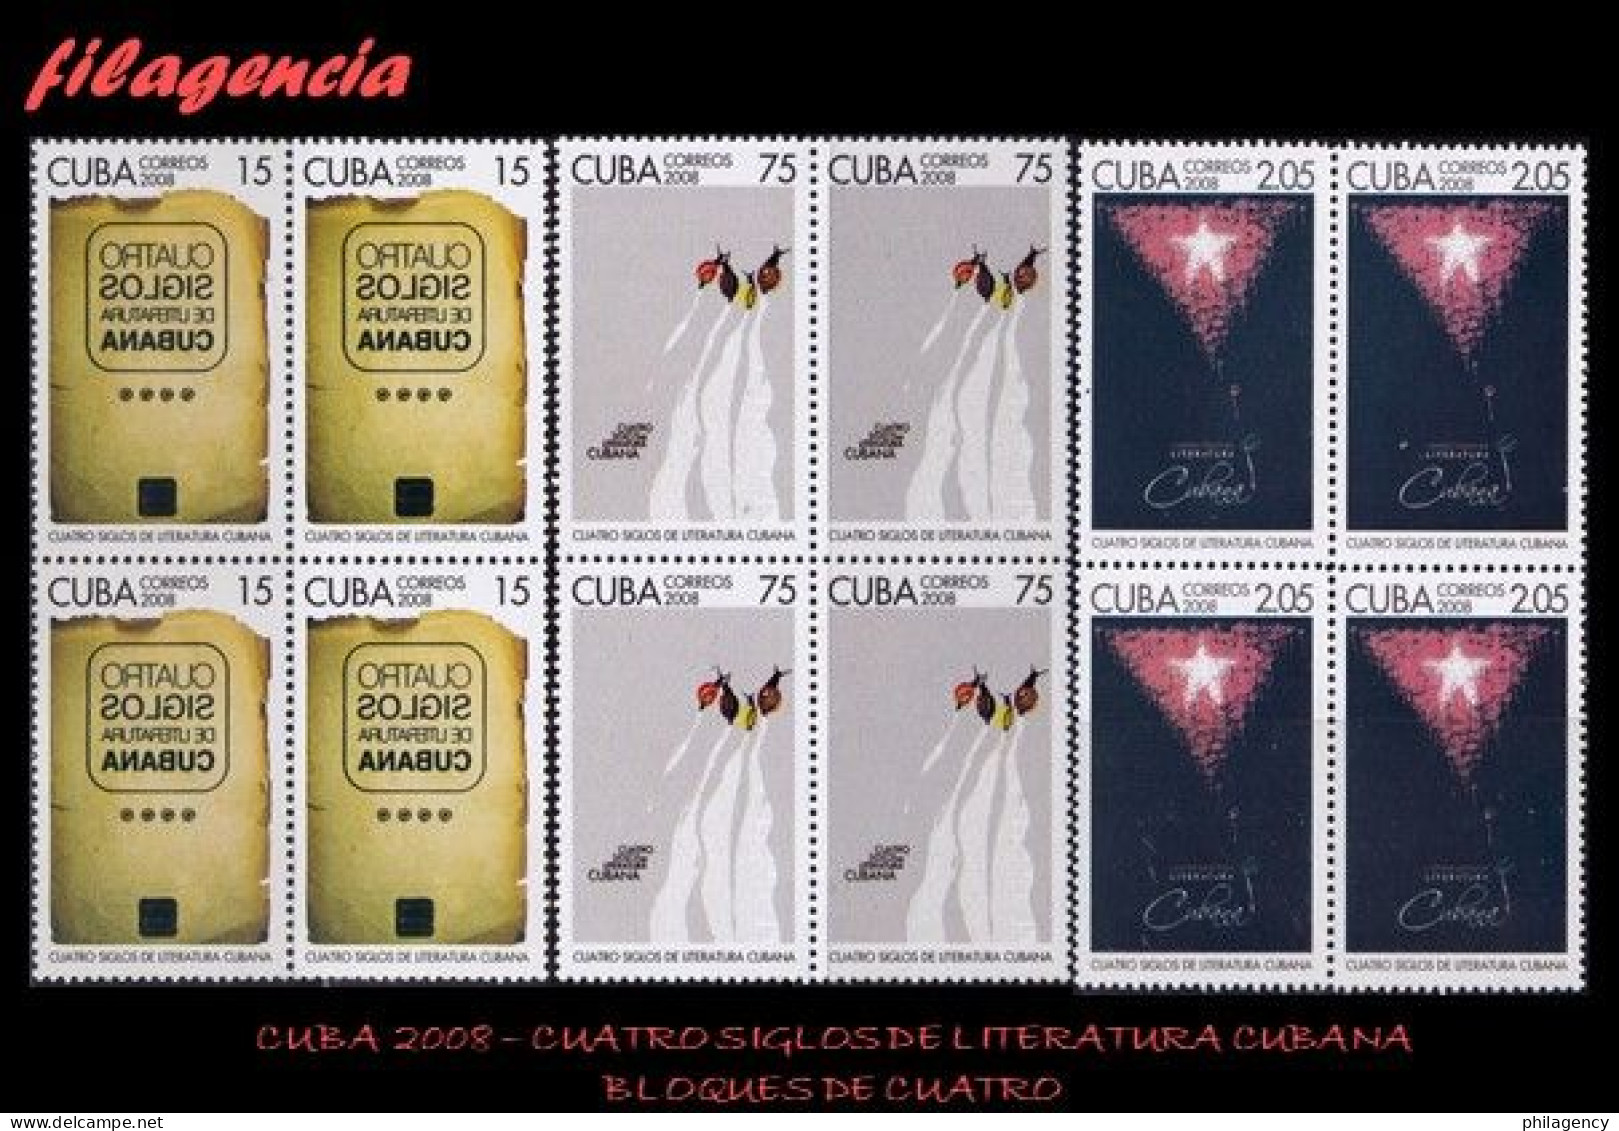 CUBA. BLOQUES DE CUATRO. 2008-28 CUATRO SIGLOS DE LITERATURA CUBANA - Ongebruikt